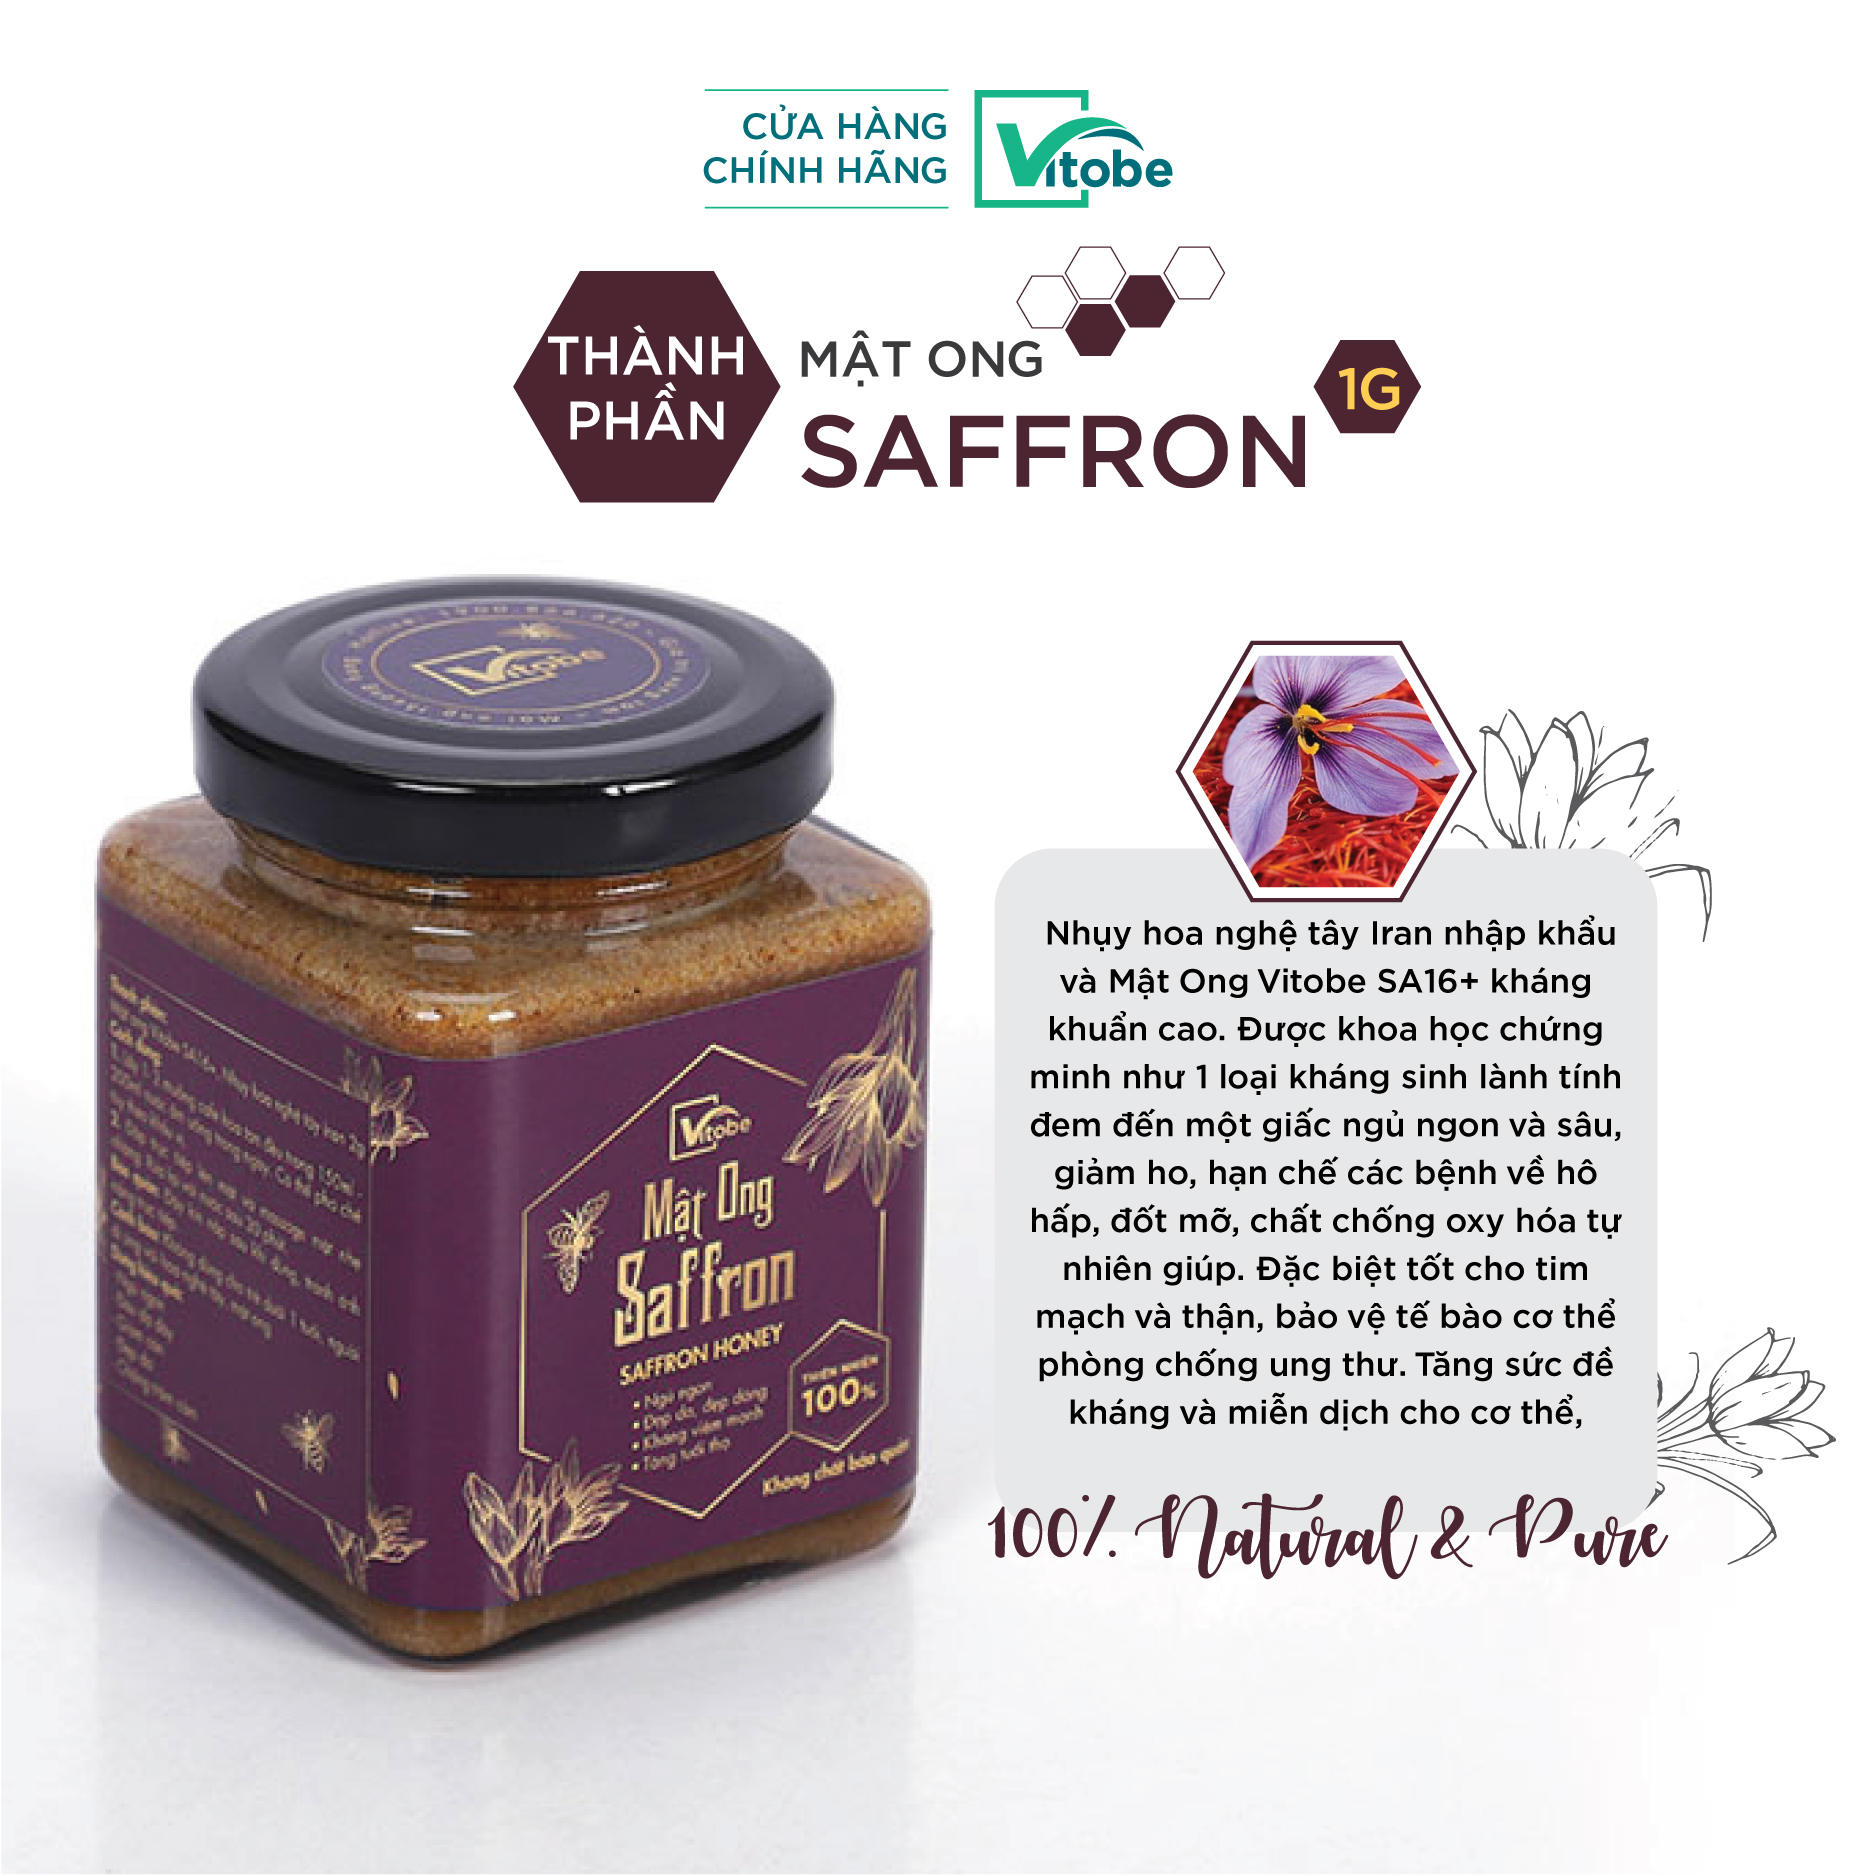 Mật Ong Saffron Vitobe (300g) nhãn hồng - Hữu Cơ 100% (TẶNG mật ong Melaleuca 300g)